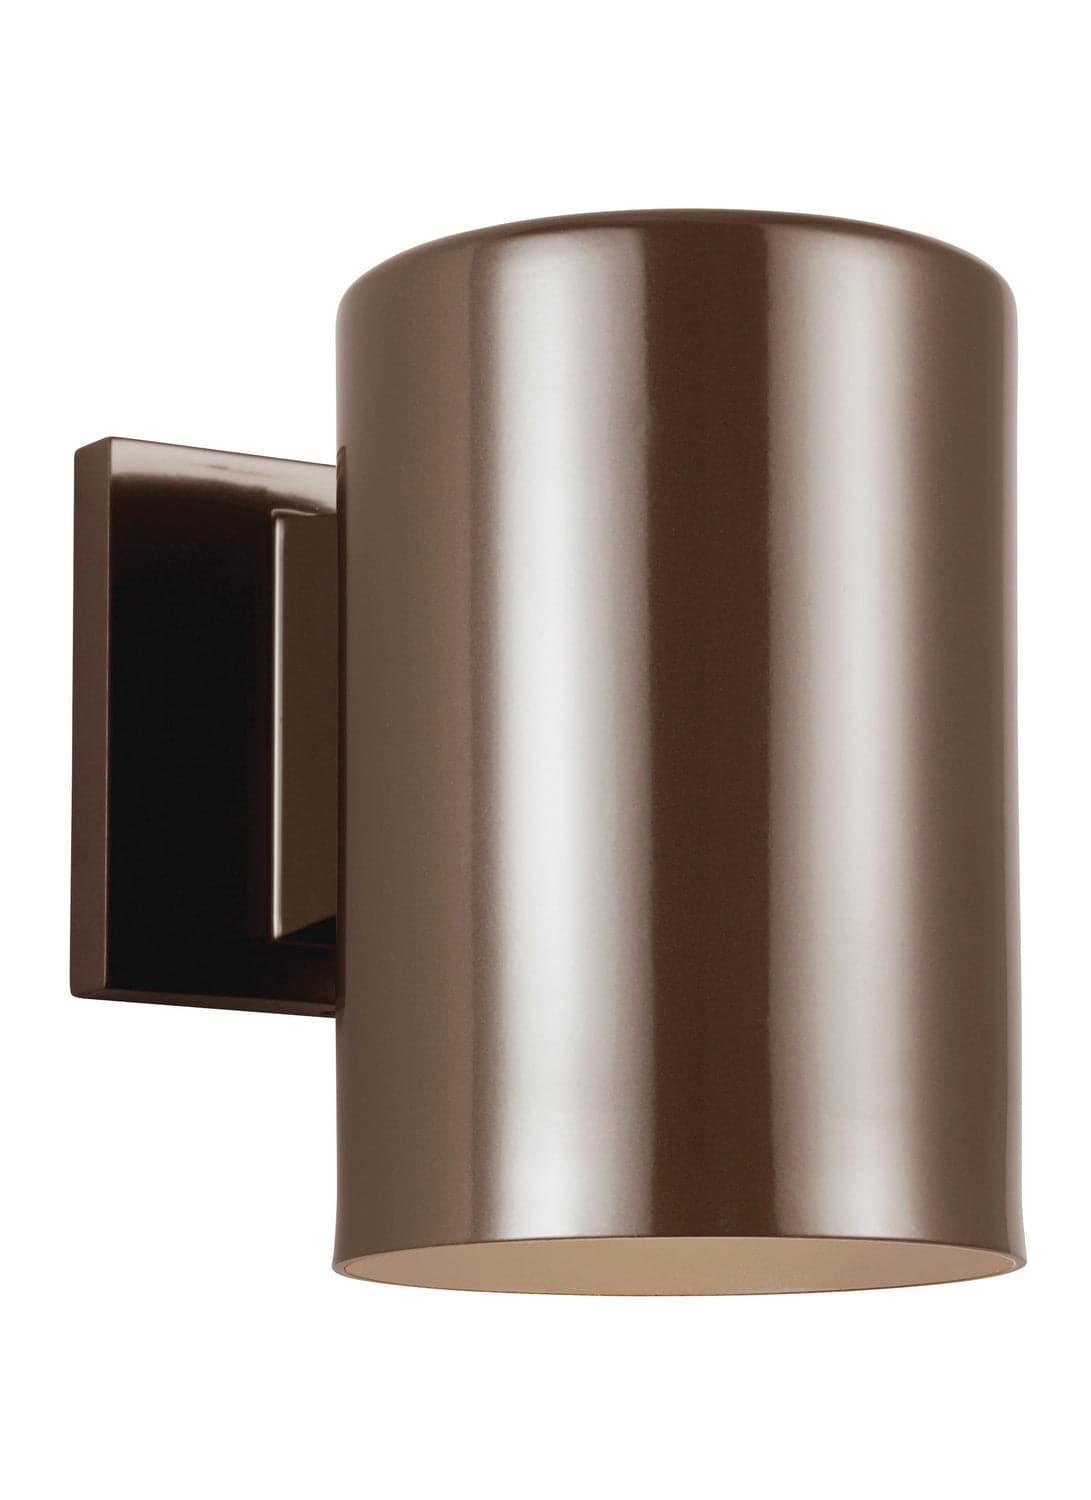 Visual Comfort Studio - 8313801EN3-10 - One Light Outdoor Wall Lantern - Outdoor Cylinders - Bronze